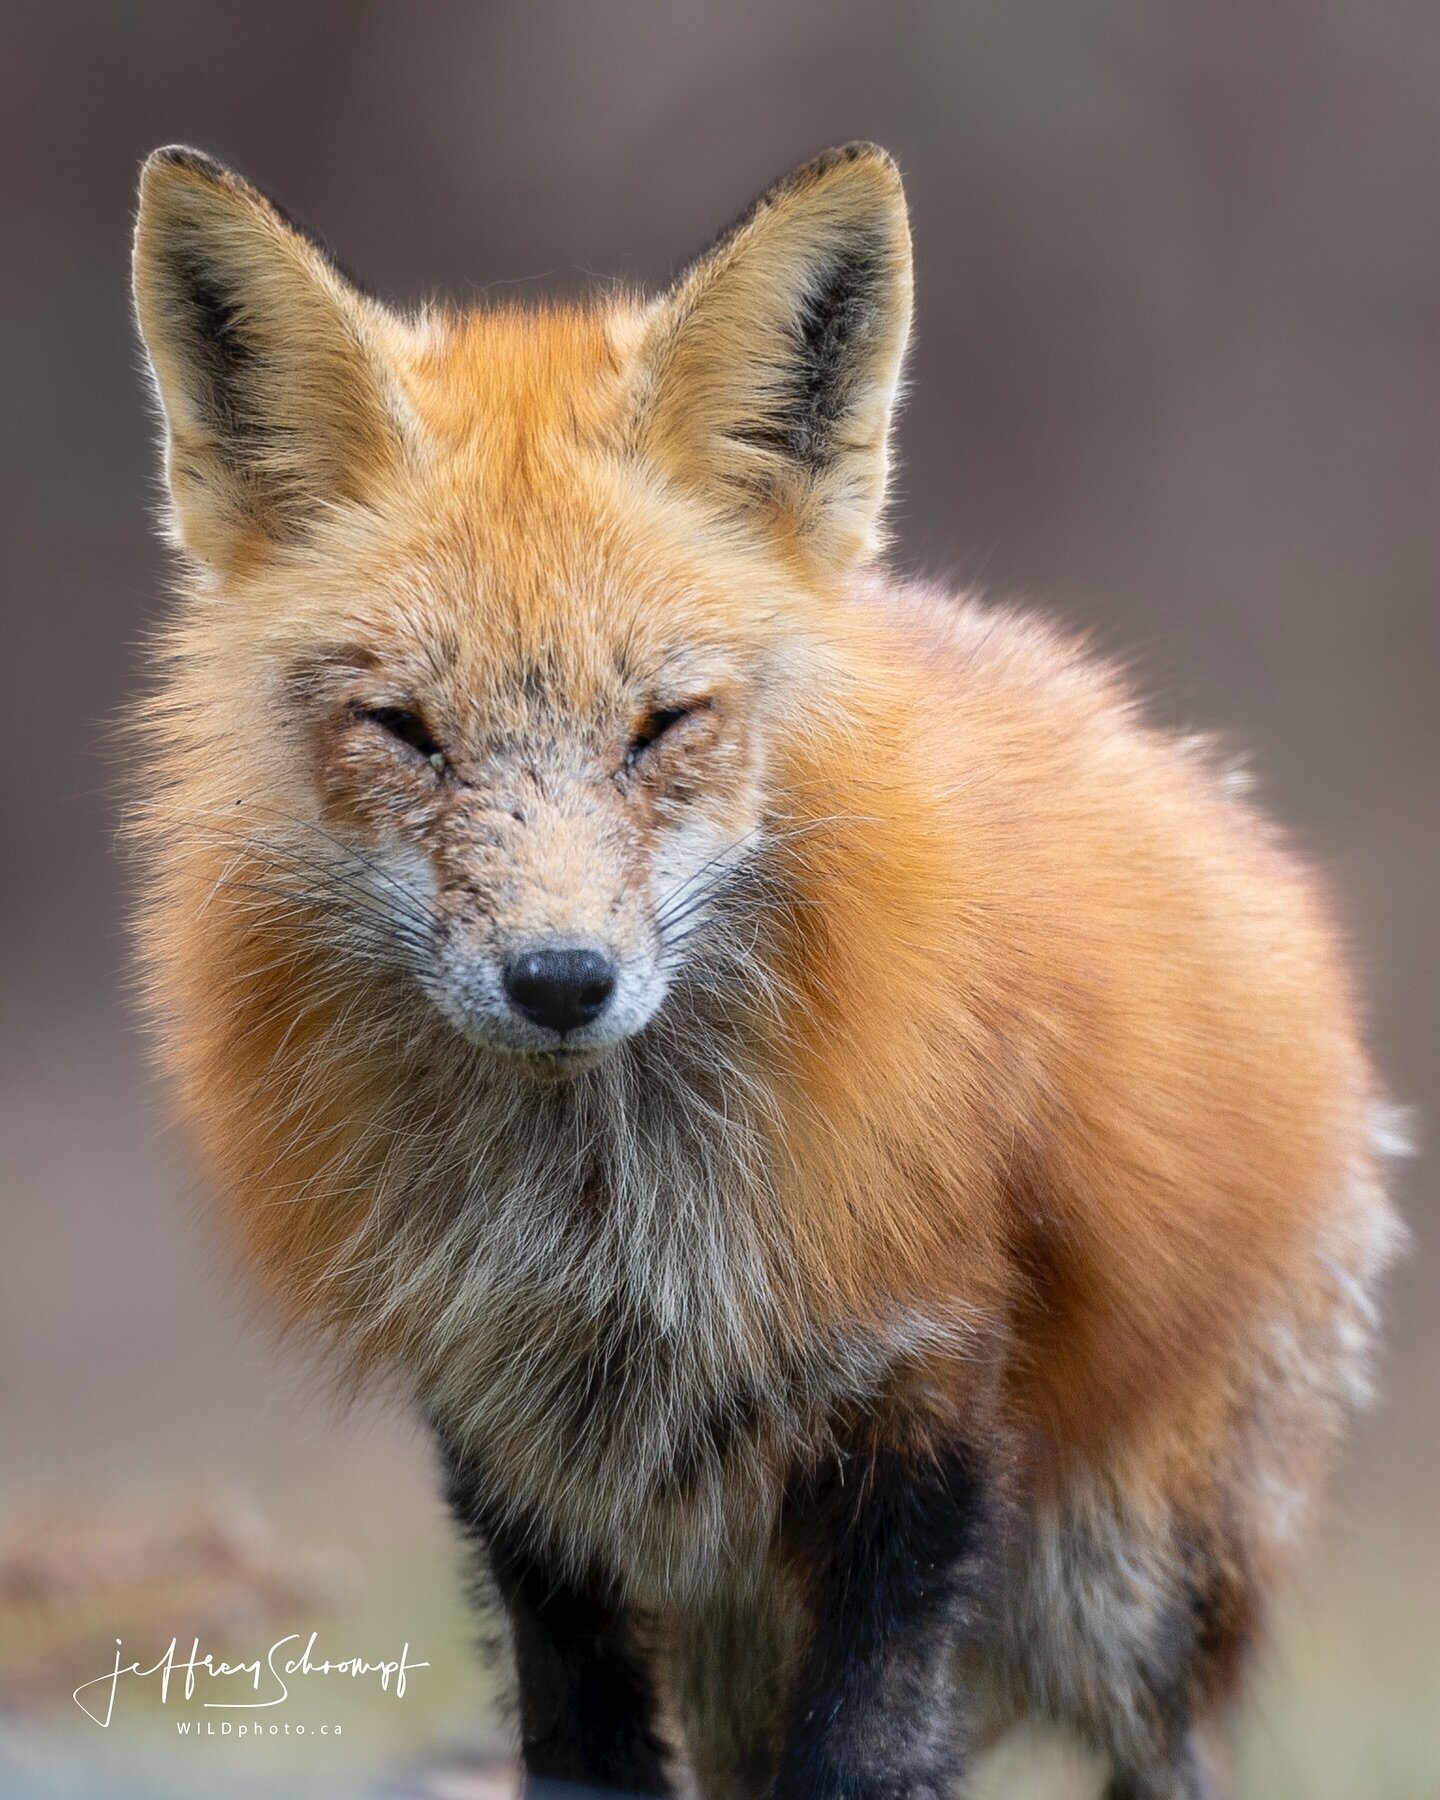 Red Fox
#redfox #fox